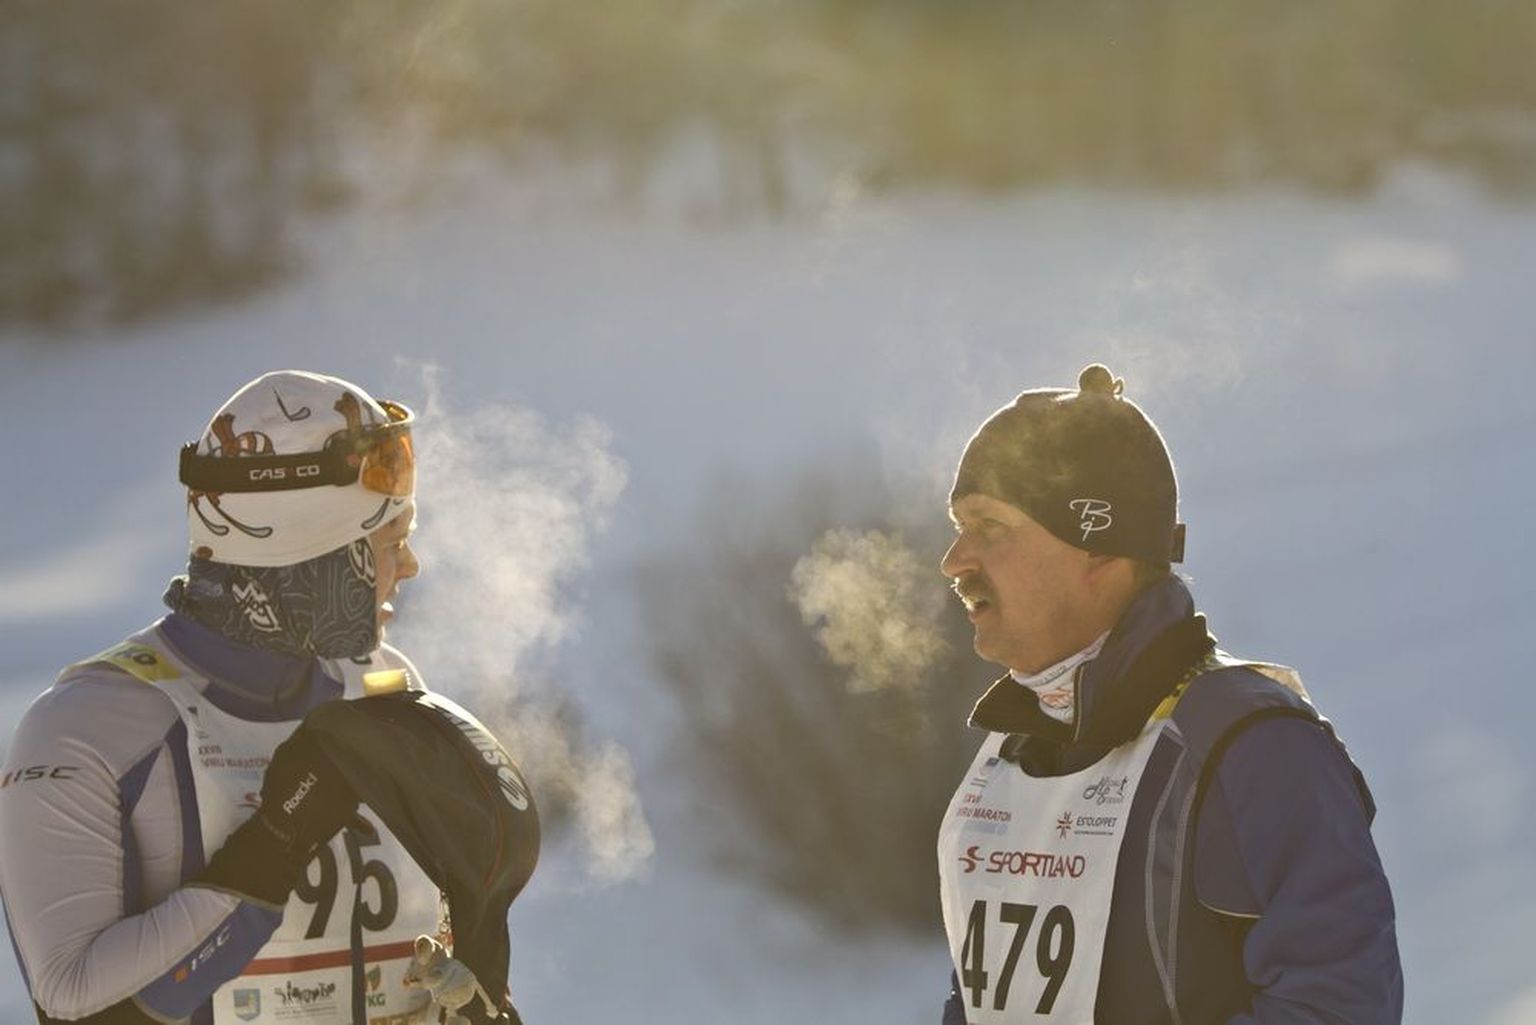 28.jaanuaril Mõedakul peetud 28. Viru Maraton avas 15. Estoloppeti rahvaspordiürituste hooaja